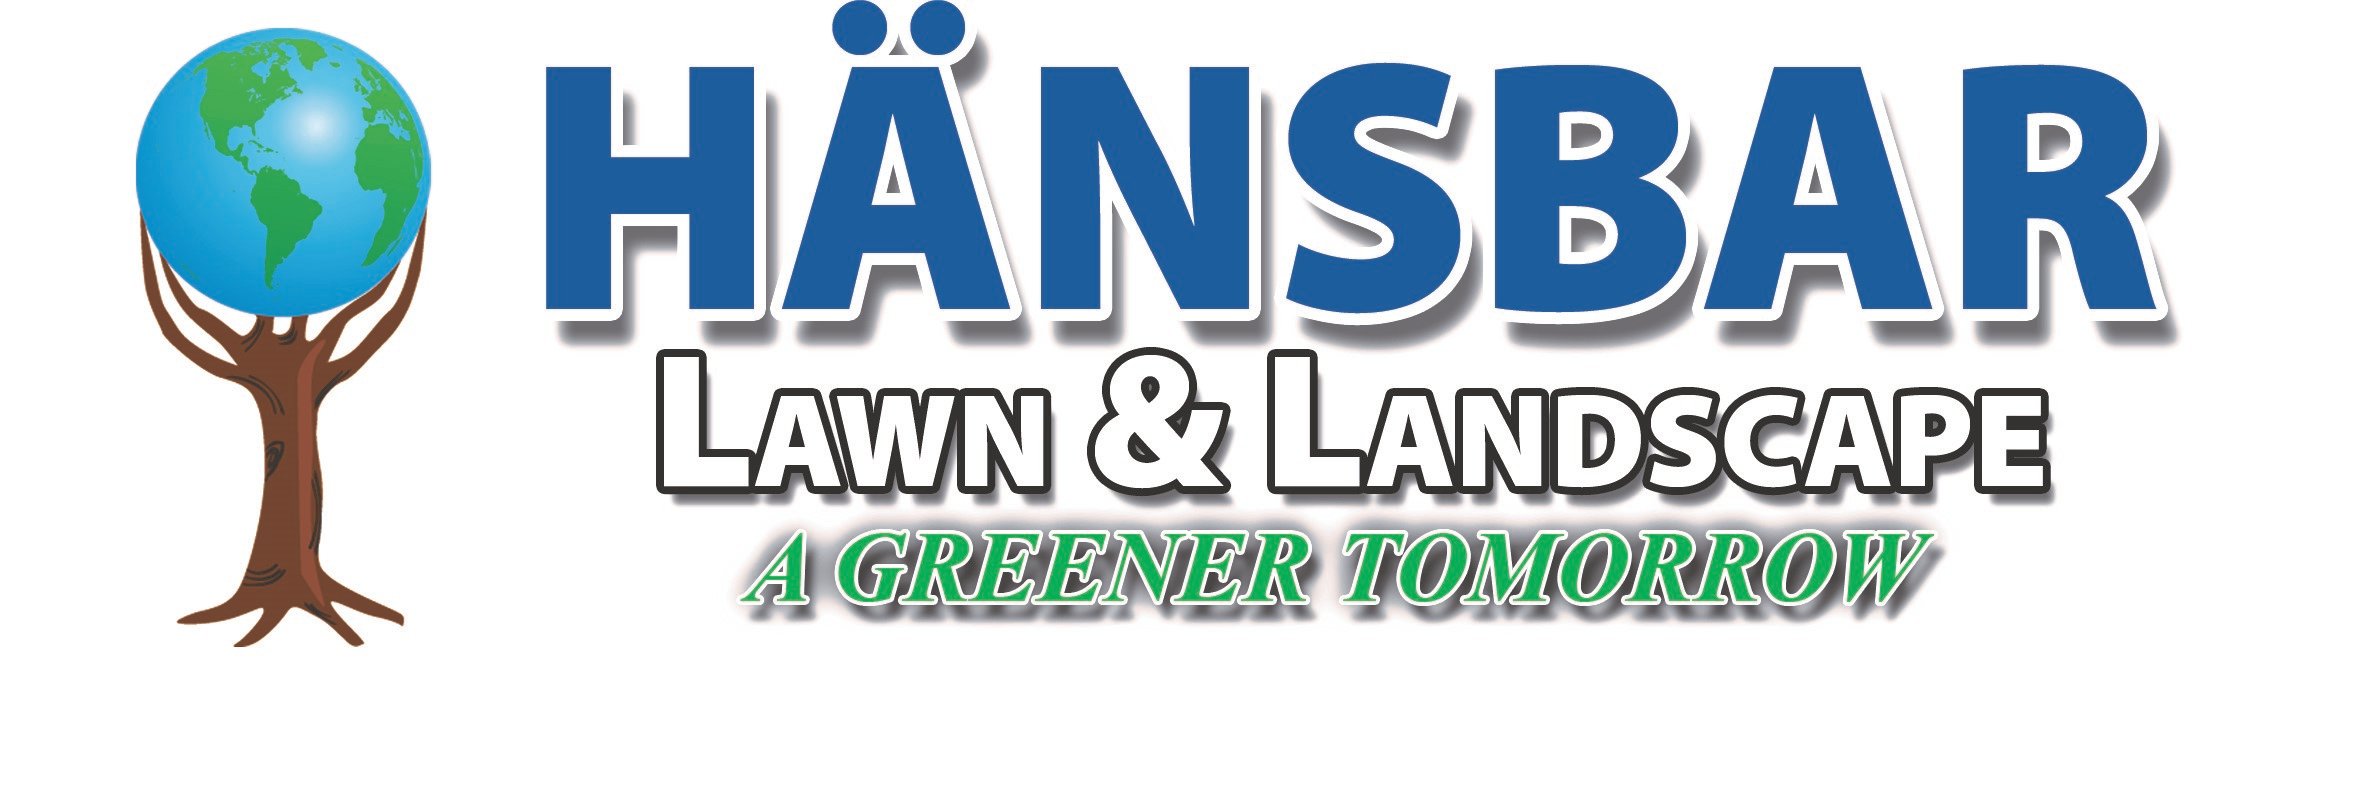 Hansbar Lawn & Landscape, LLC Logo